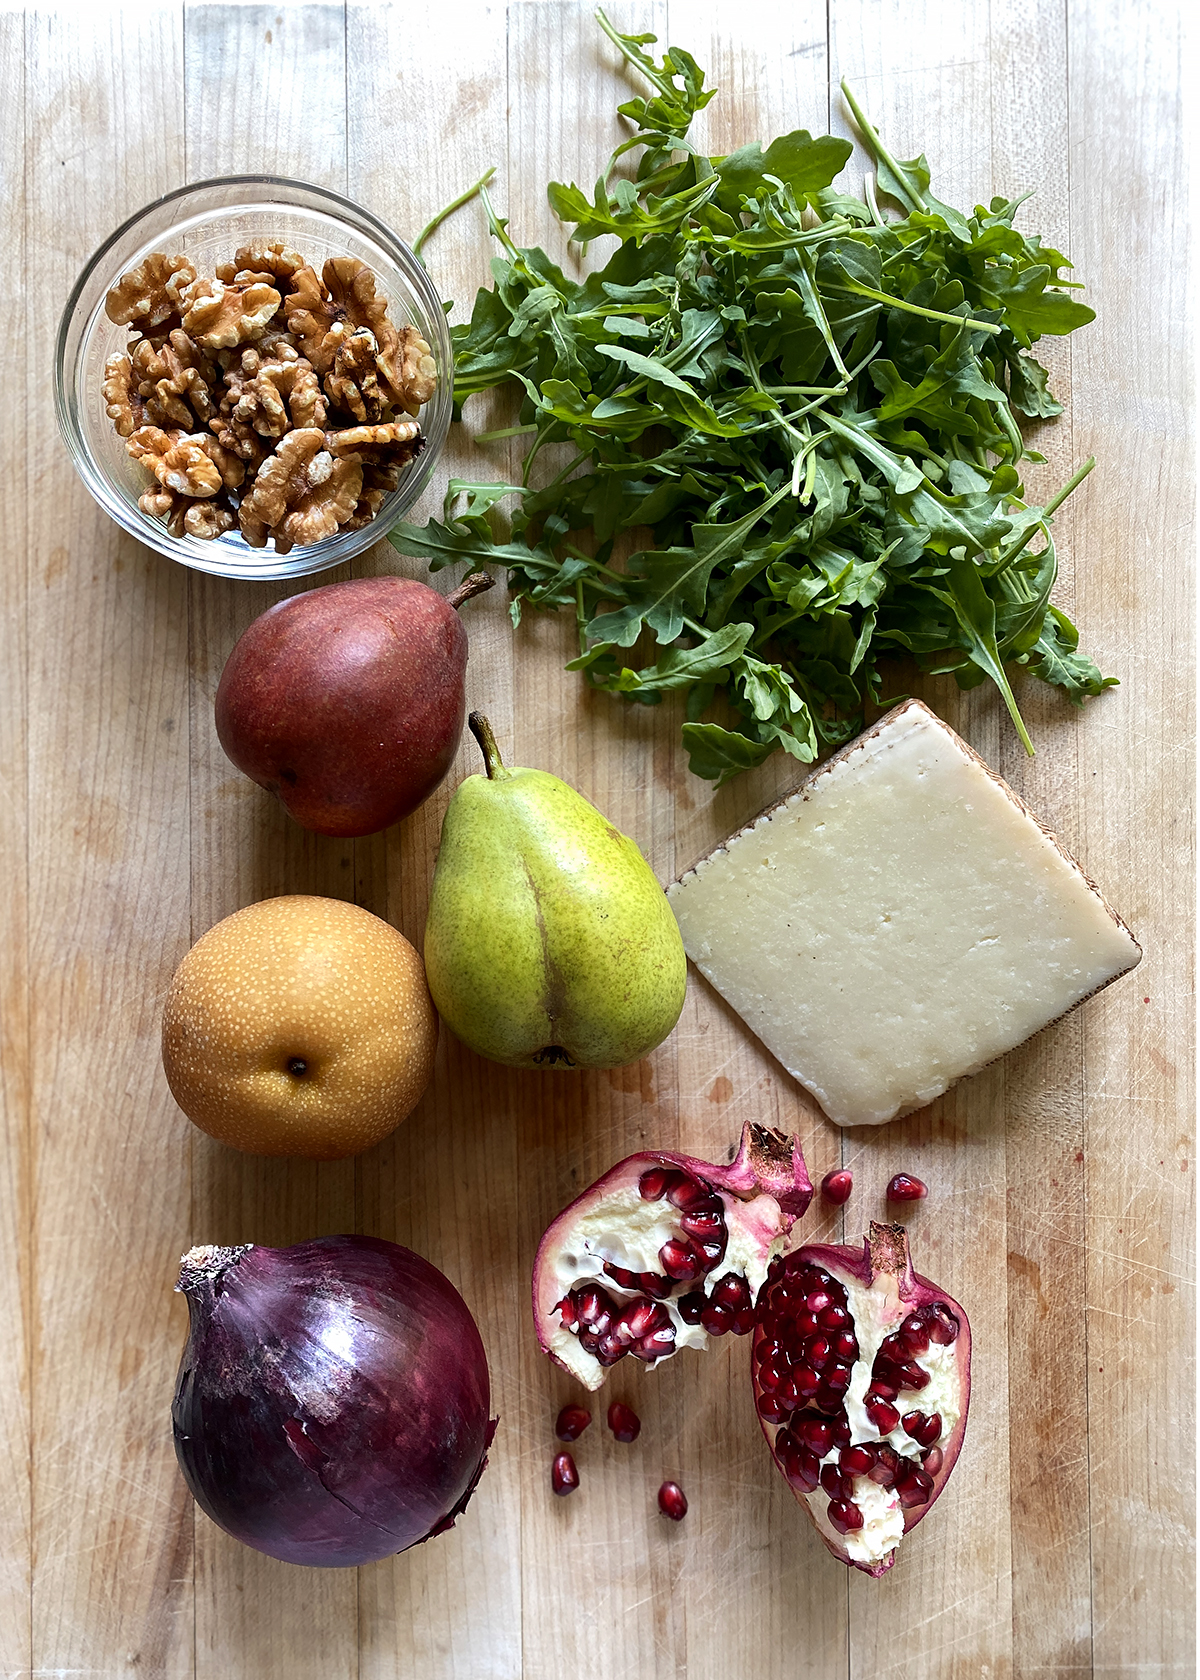 arugula pear salad ingredients on wooden cutting board